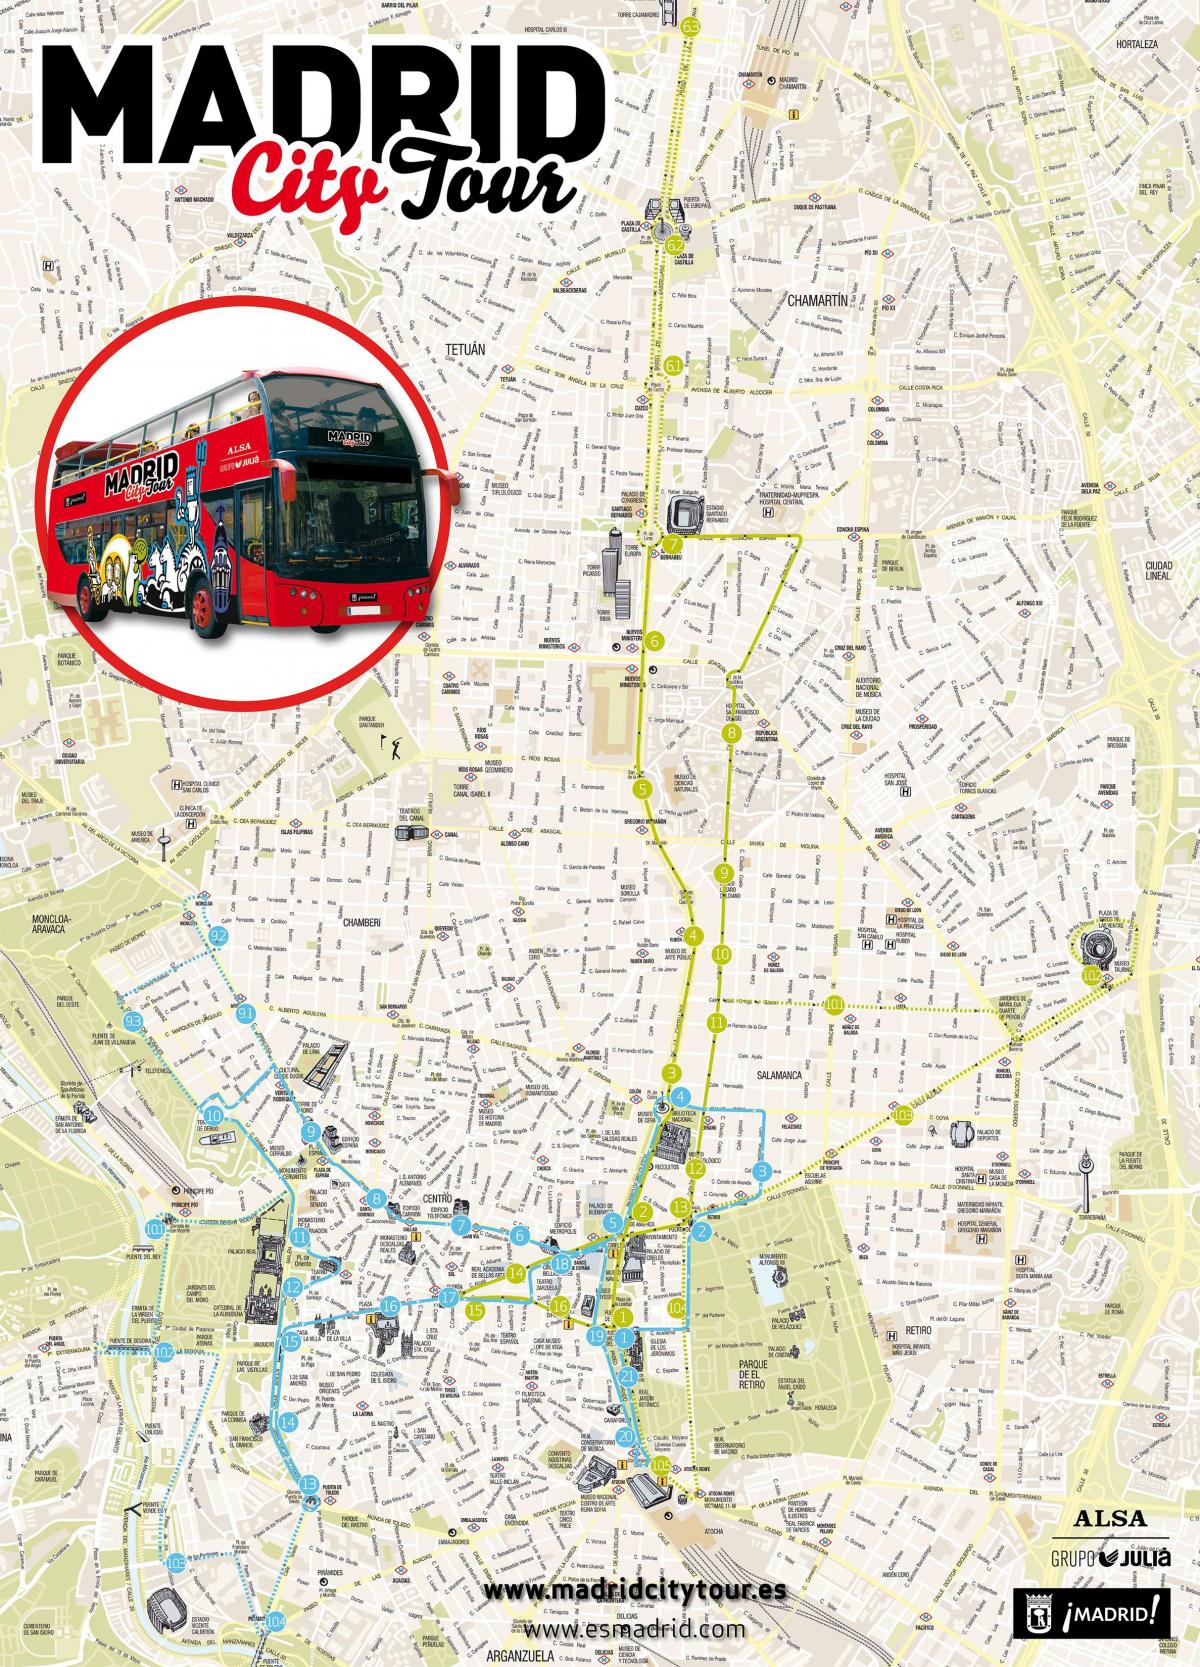 Madrid ekskurzija autobusna karta